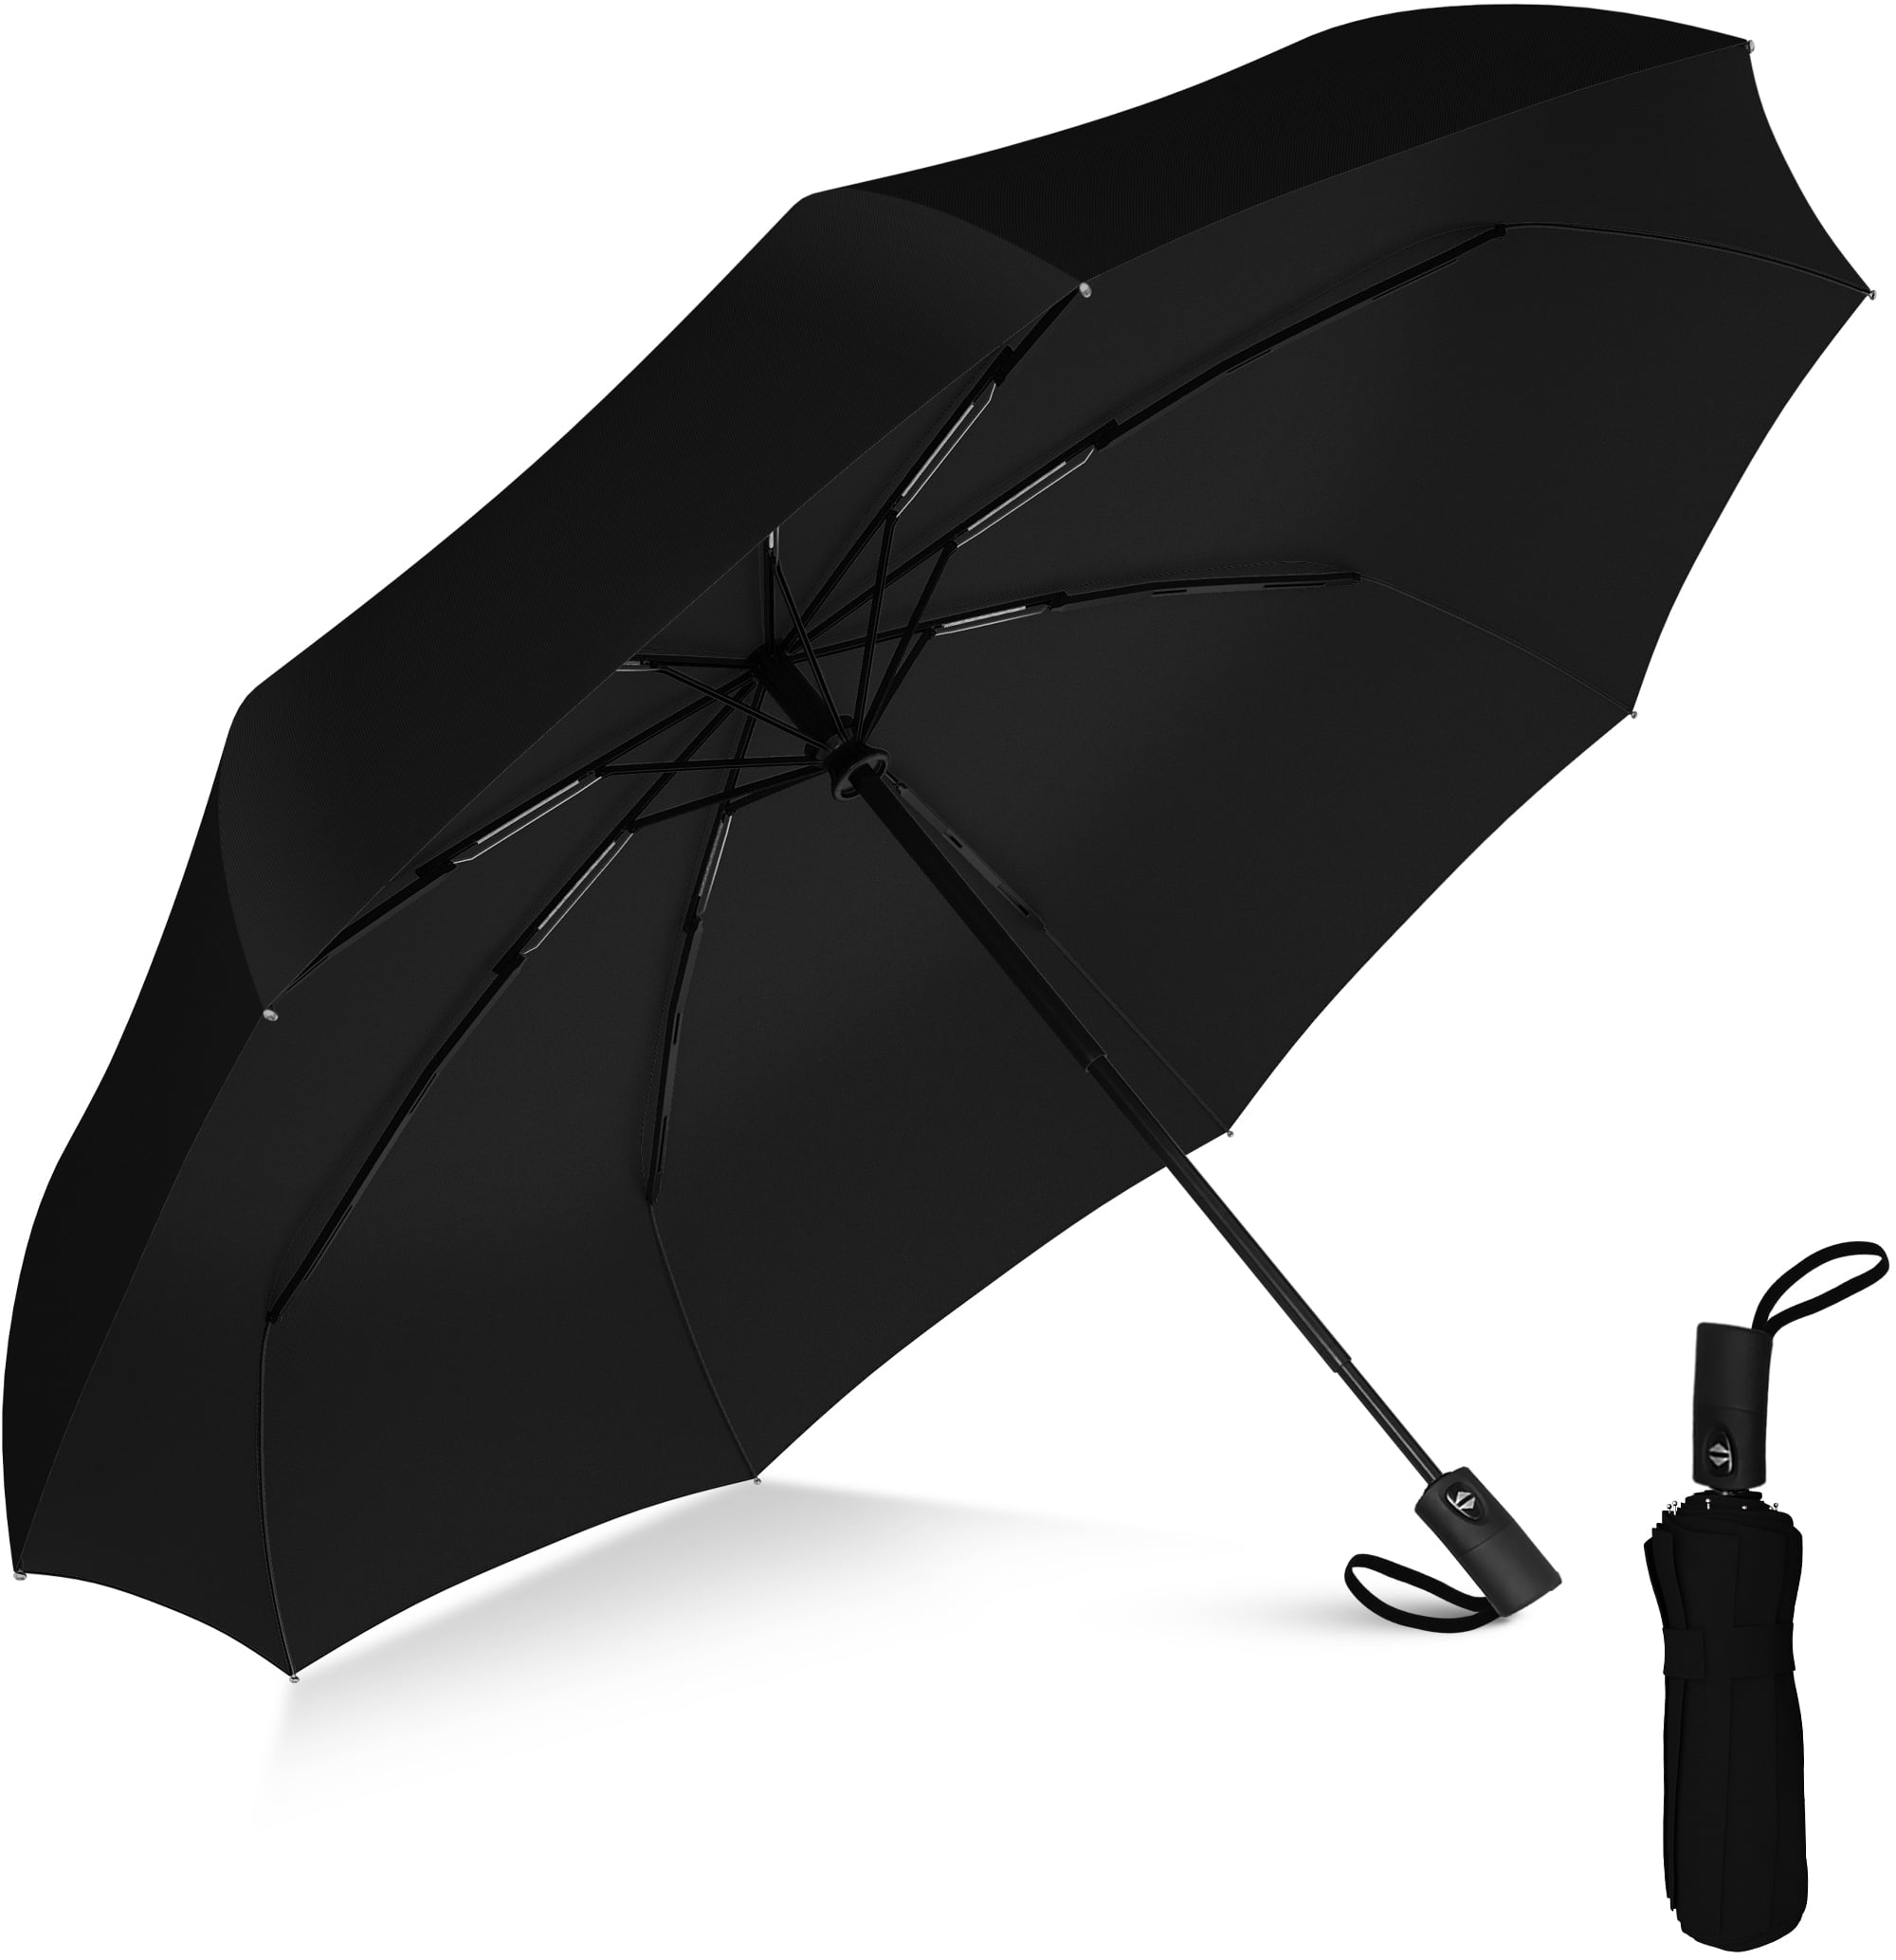 Auto Open & Close Repel Umbrella Windproof 3 Folding Compact Travel Umbrella US 